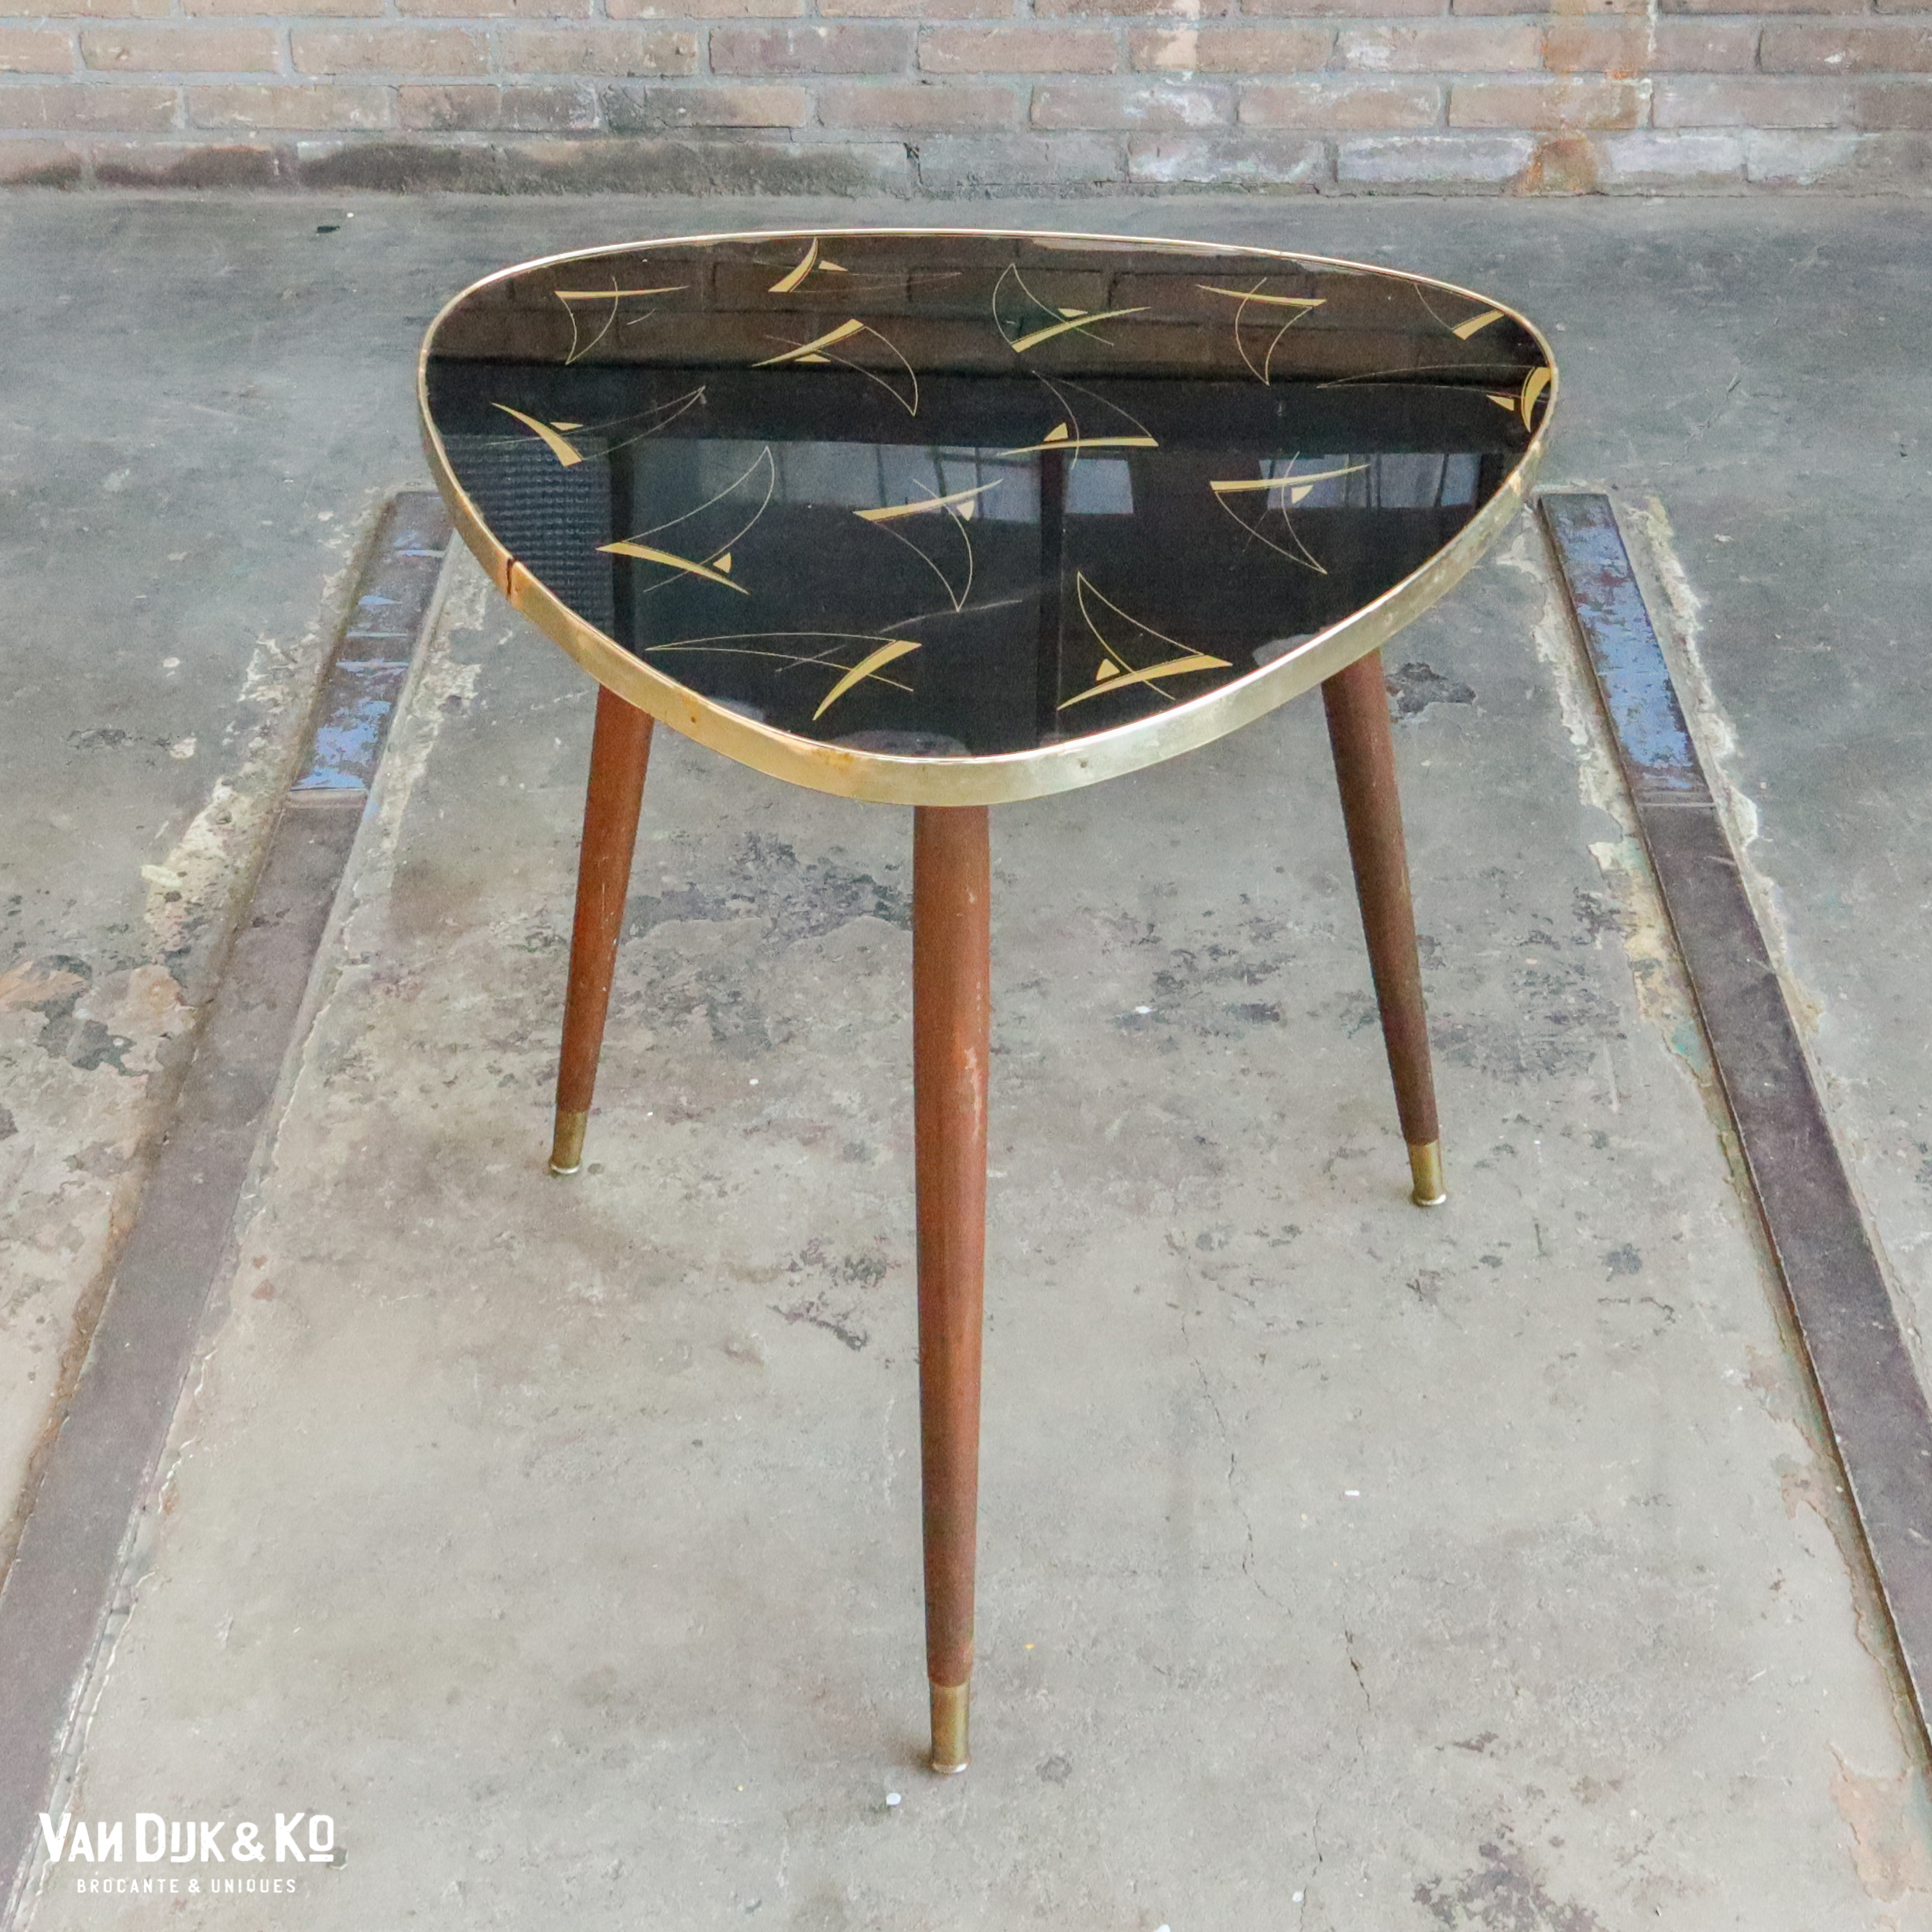 Vintage formica tafel » Van & Ko